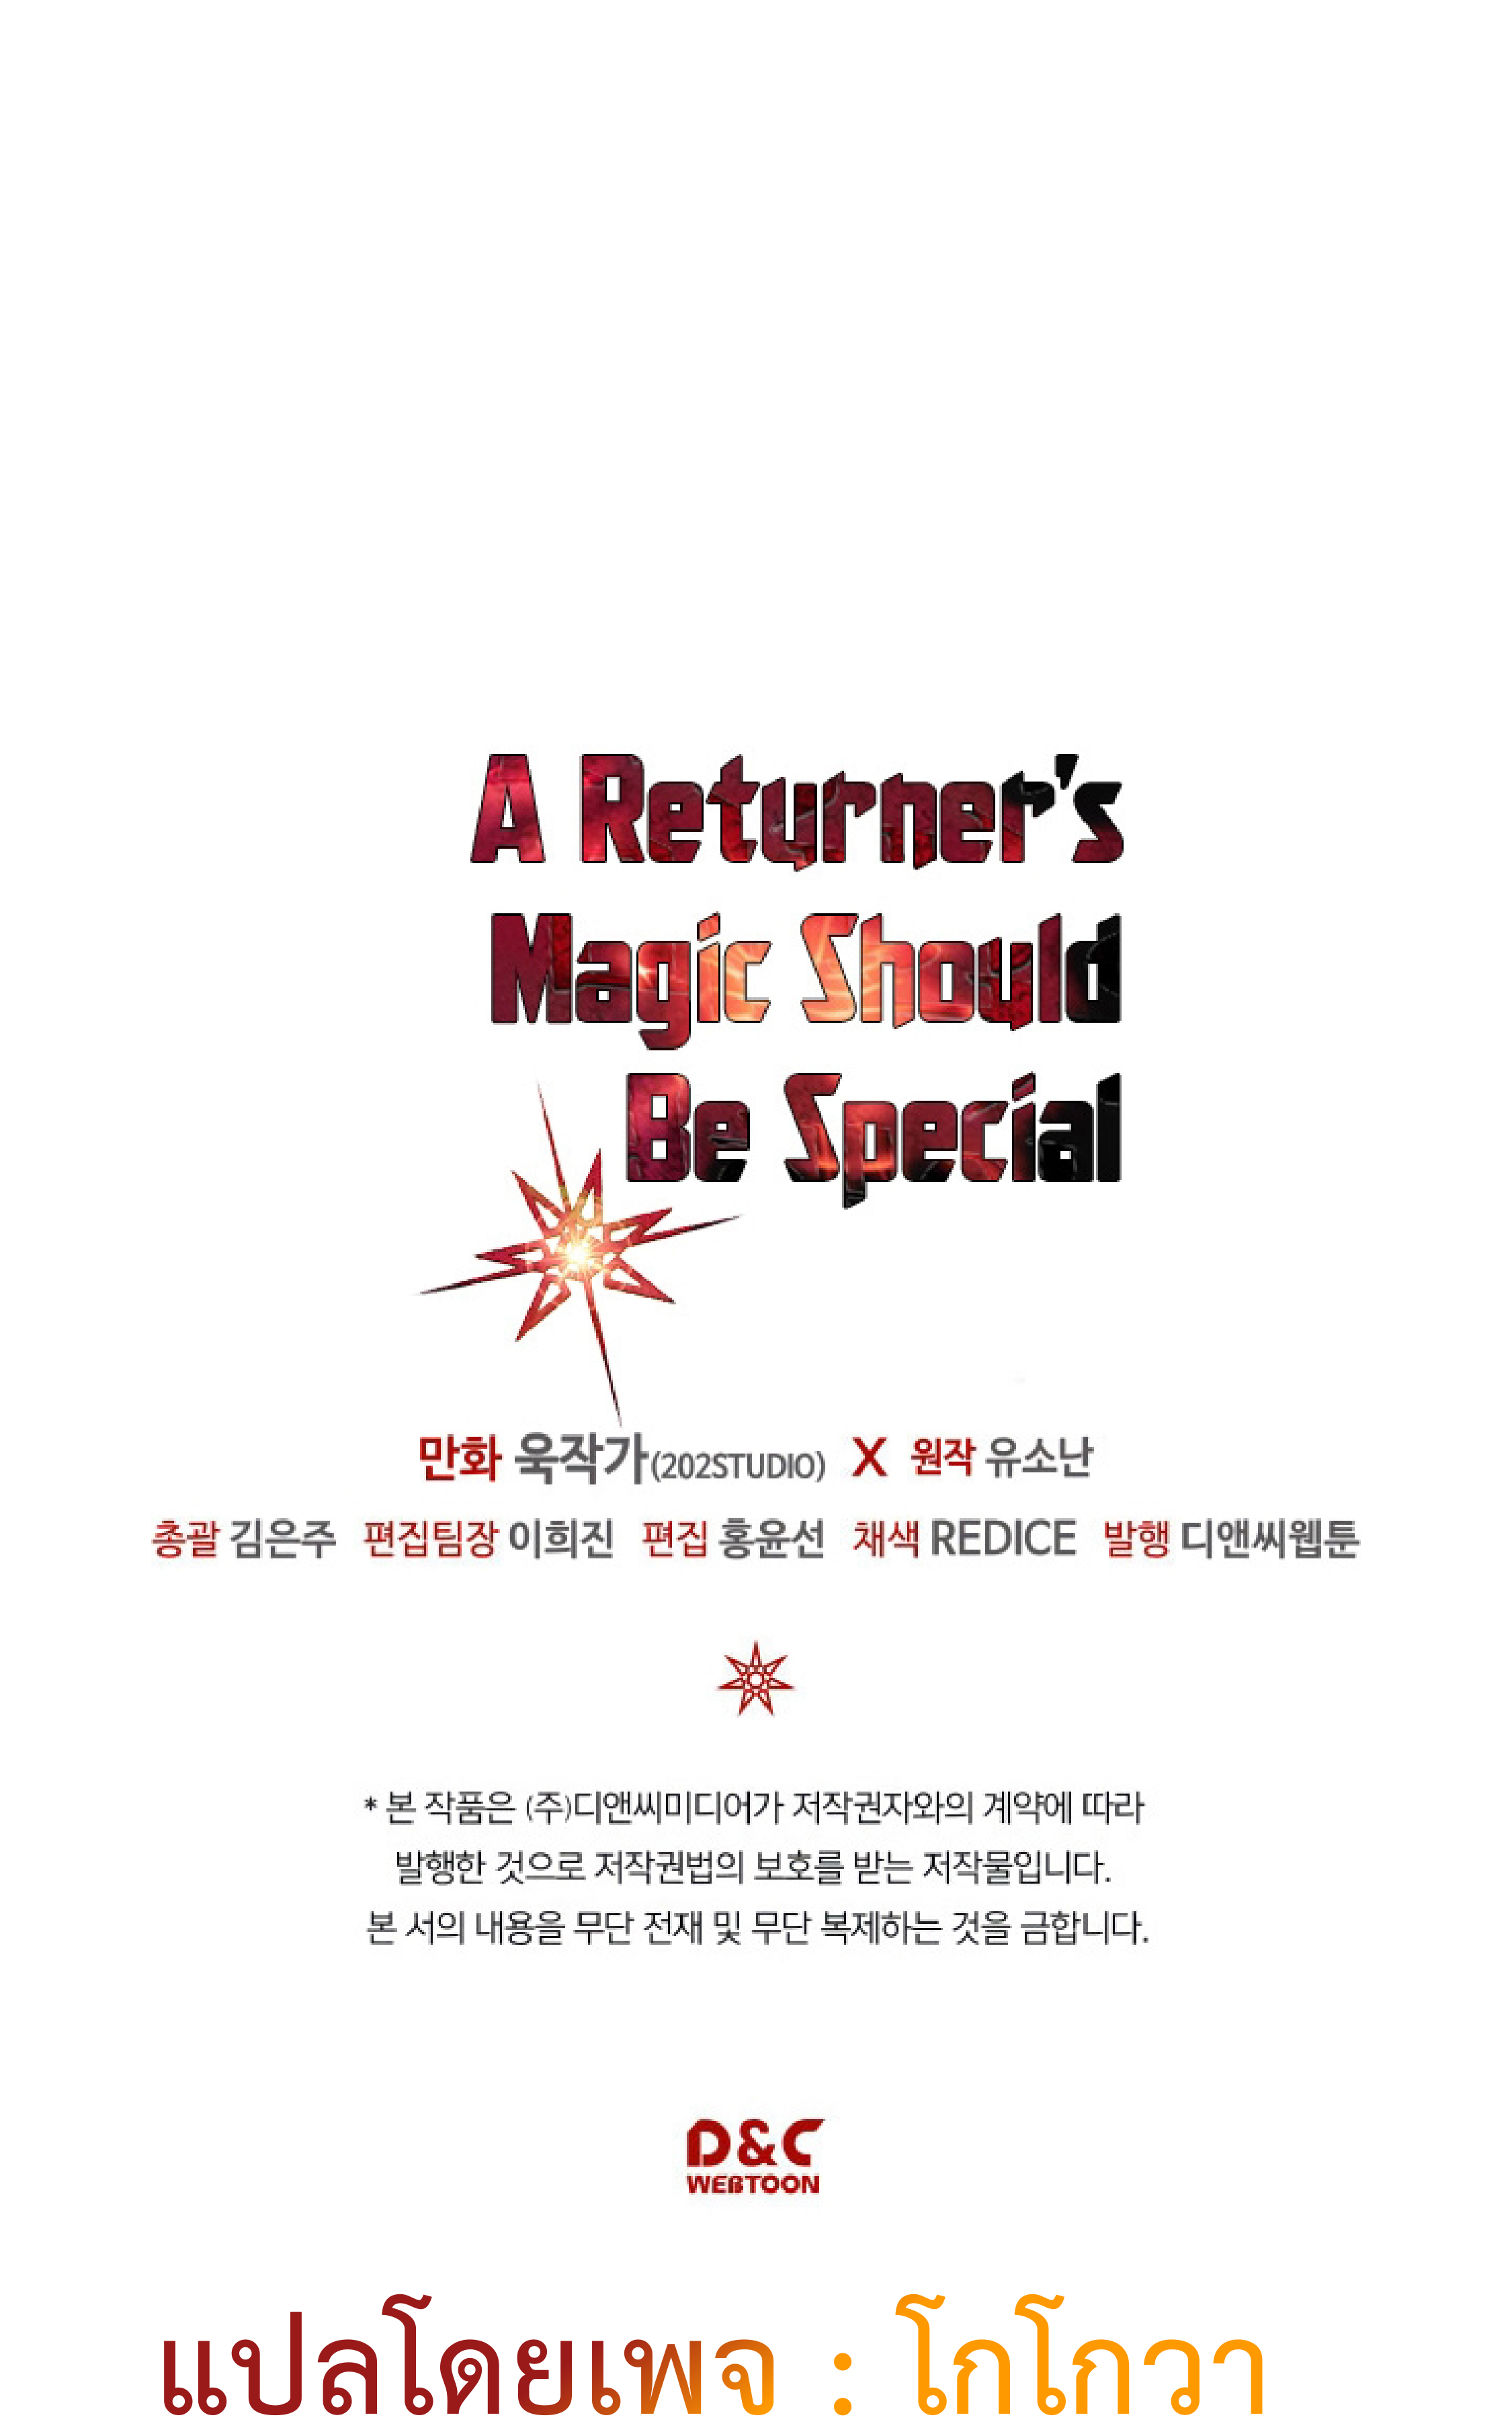 A Returner’s Magic Should Be Special113 60